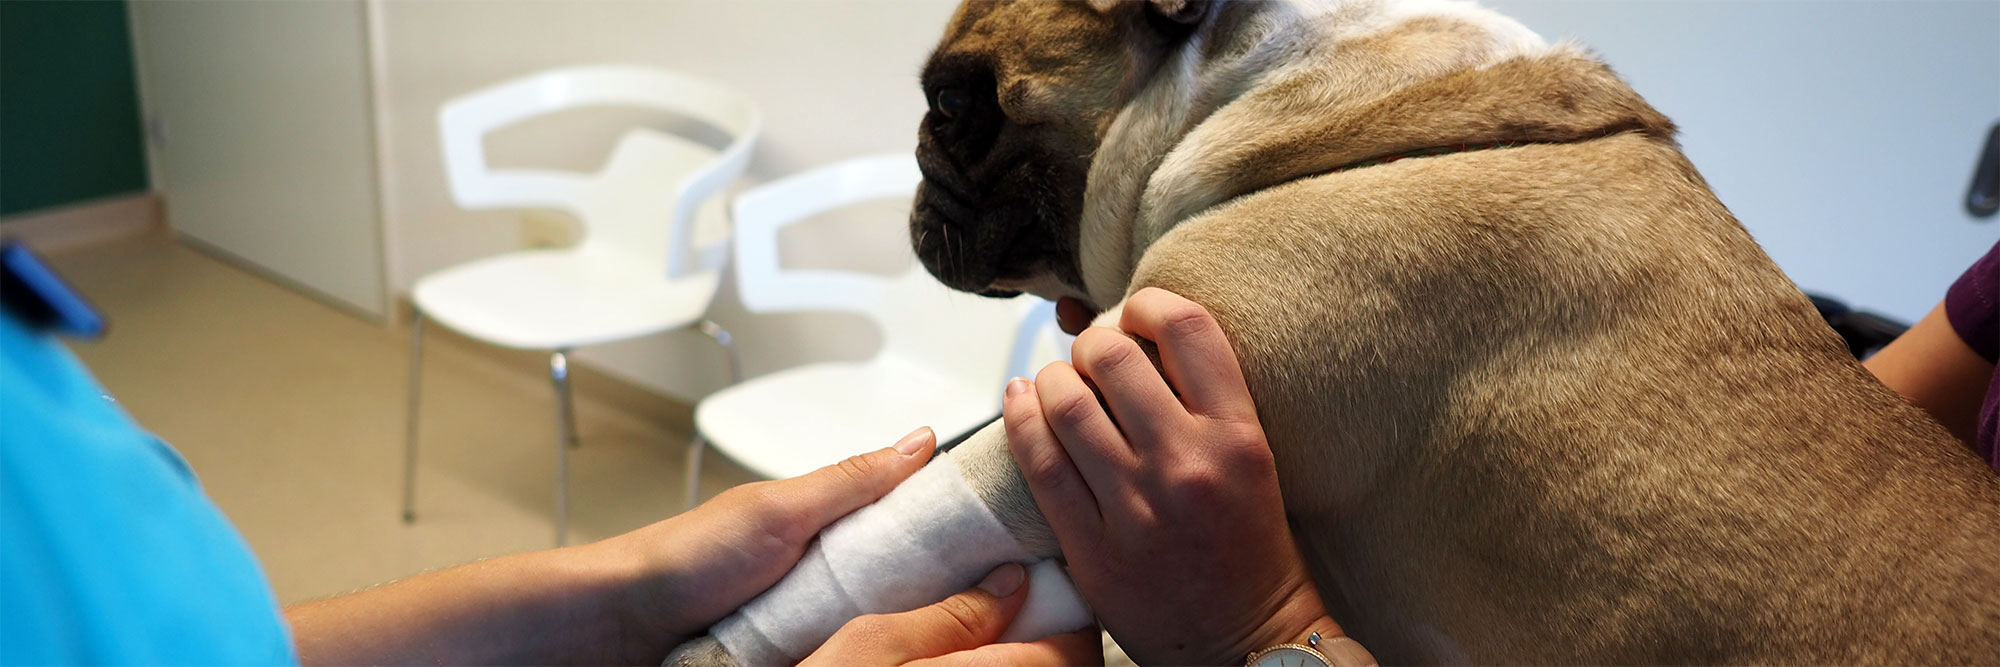 tierarztpraxis emmevet ag hund verband